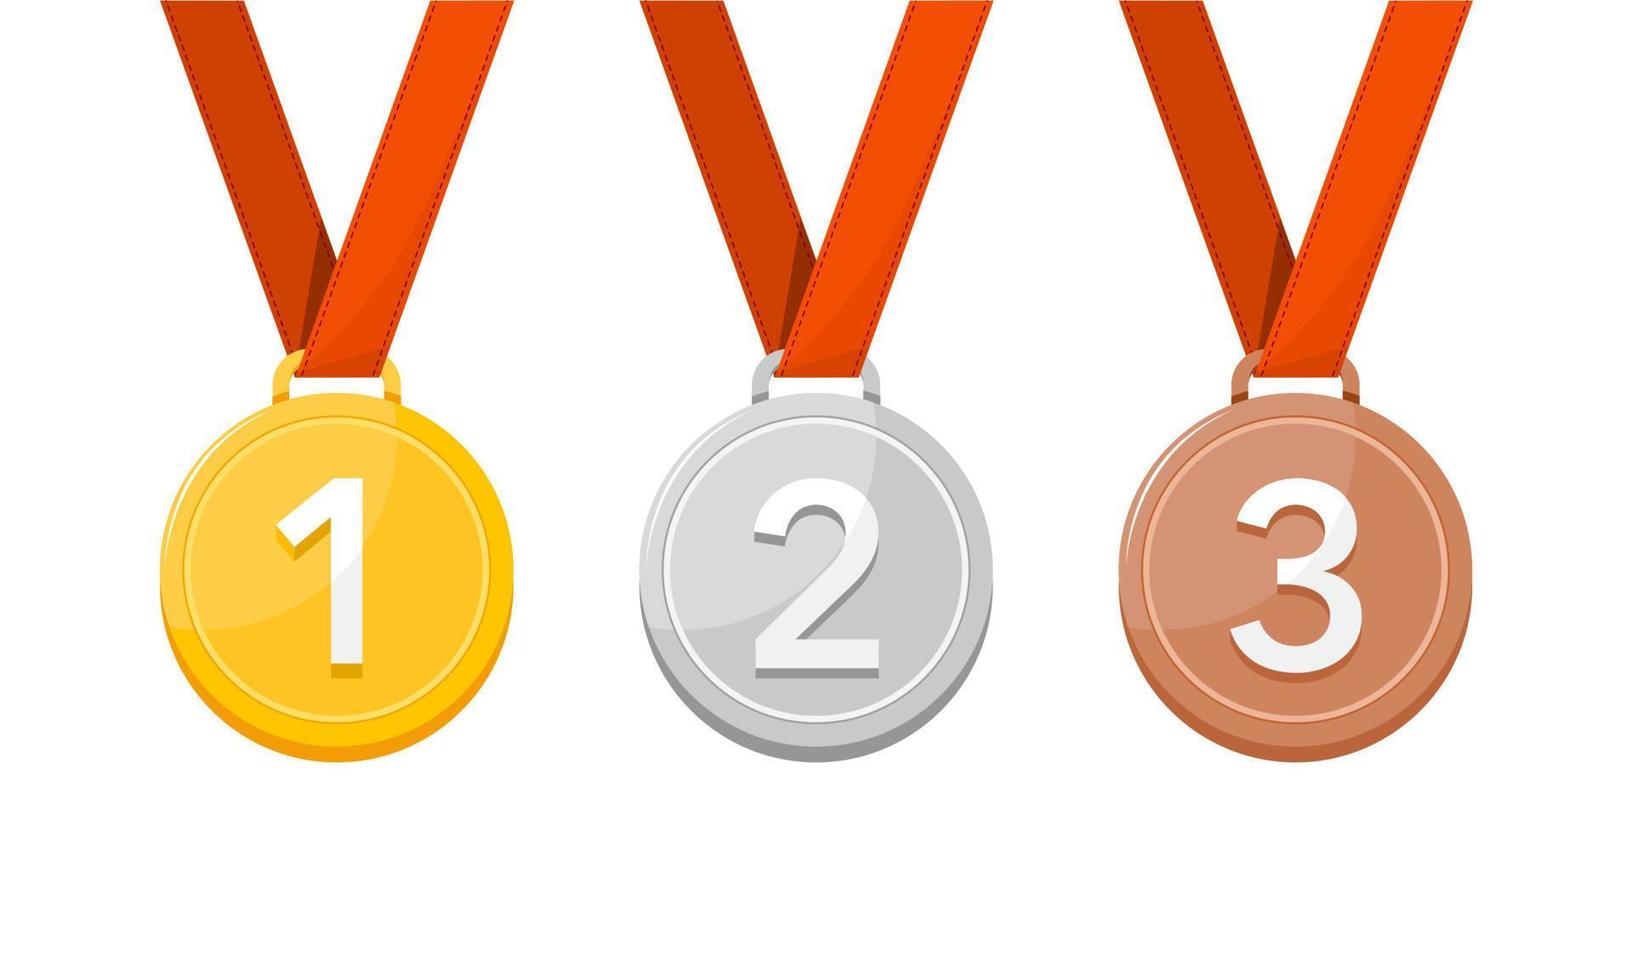 goud, zilver, en bronzen medailles winnaar en winnaar medaille met rood lintje. vector illustratie.